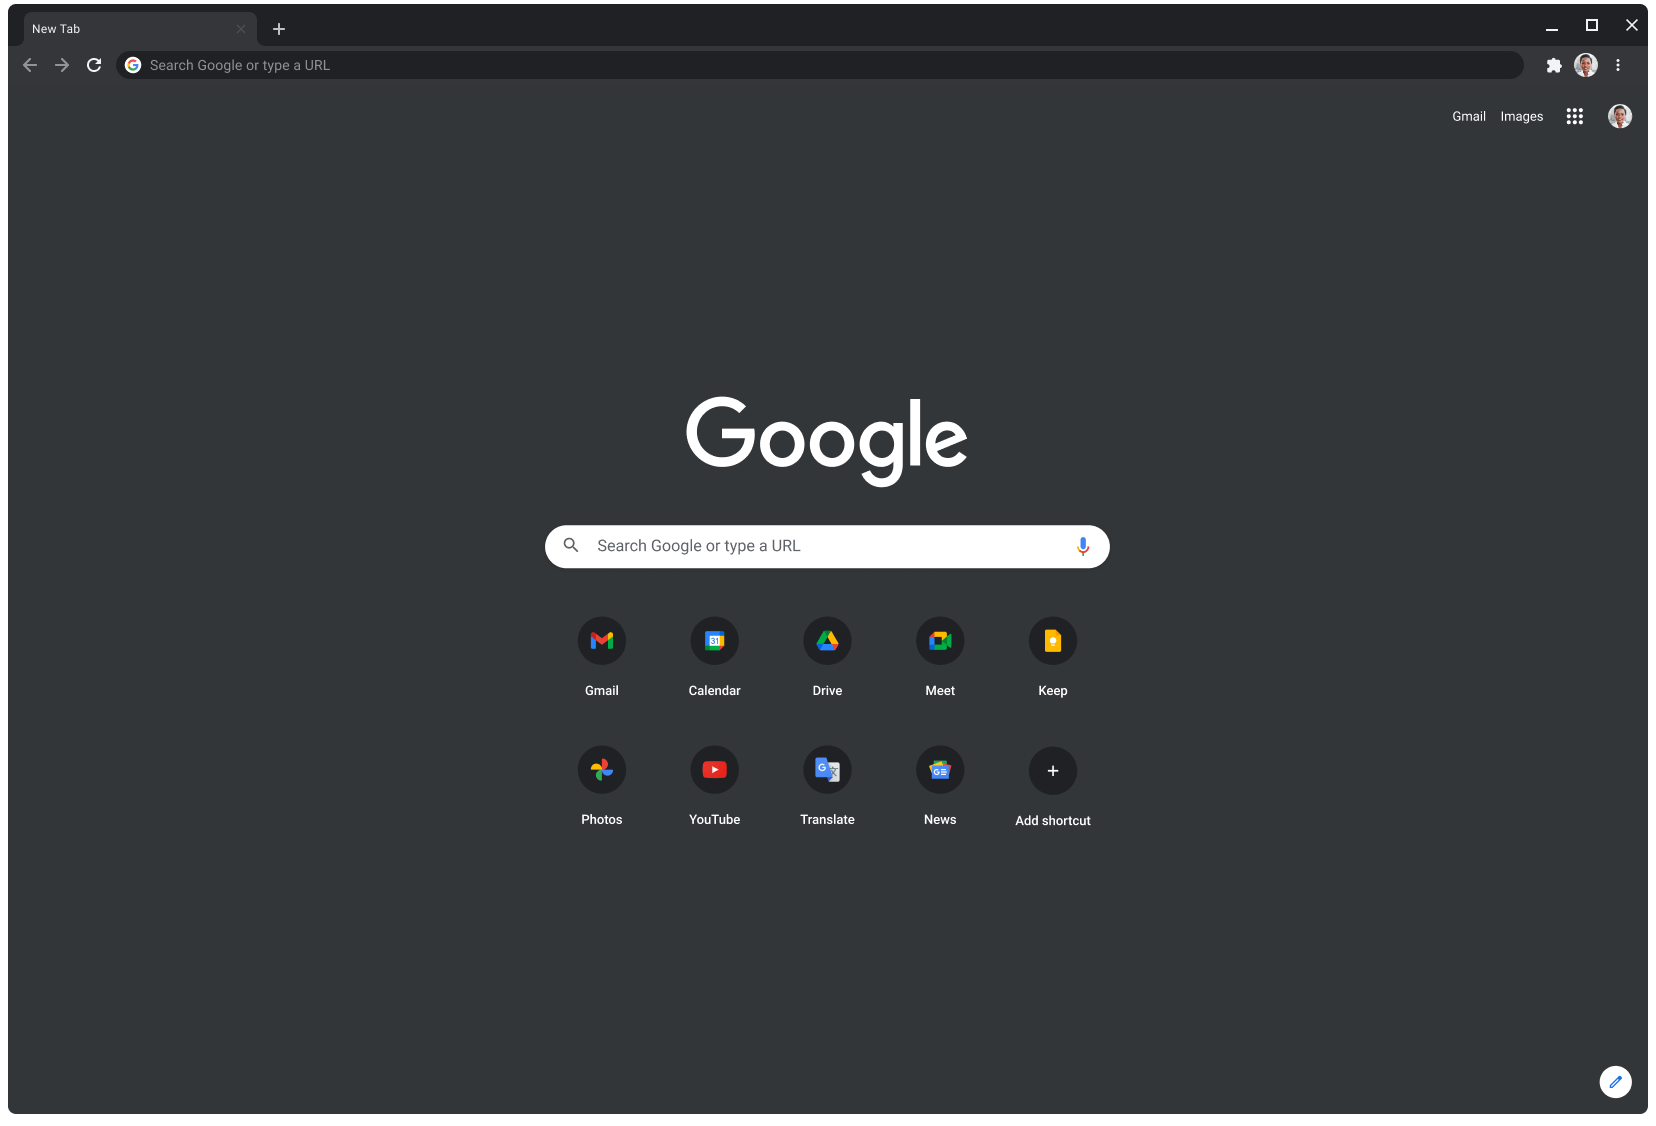 Cửa sổ trình duyệt Chrome ở chế độ tối, đang hiển thị Google.com.